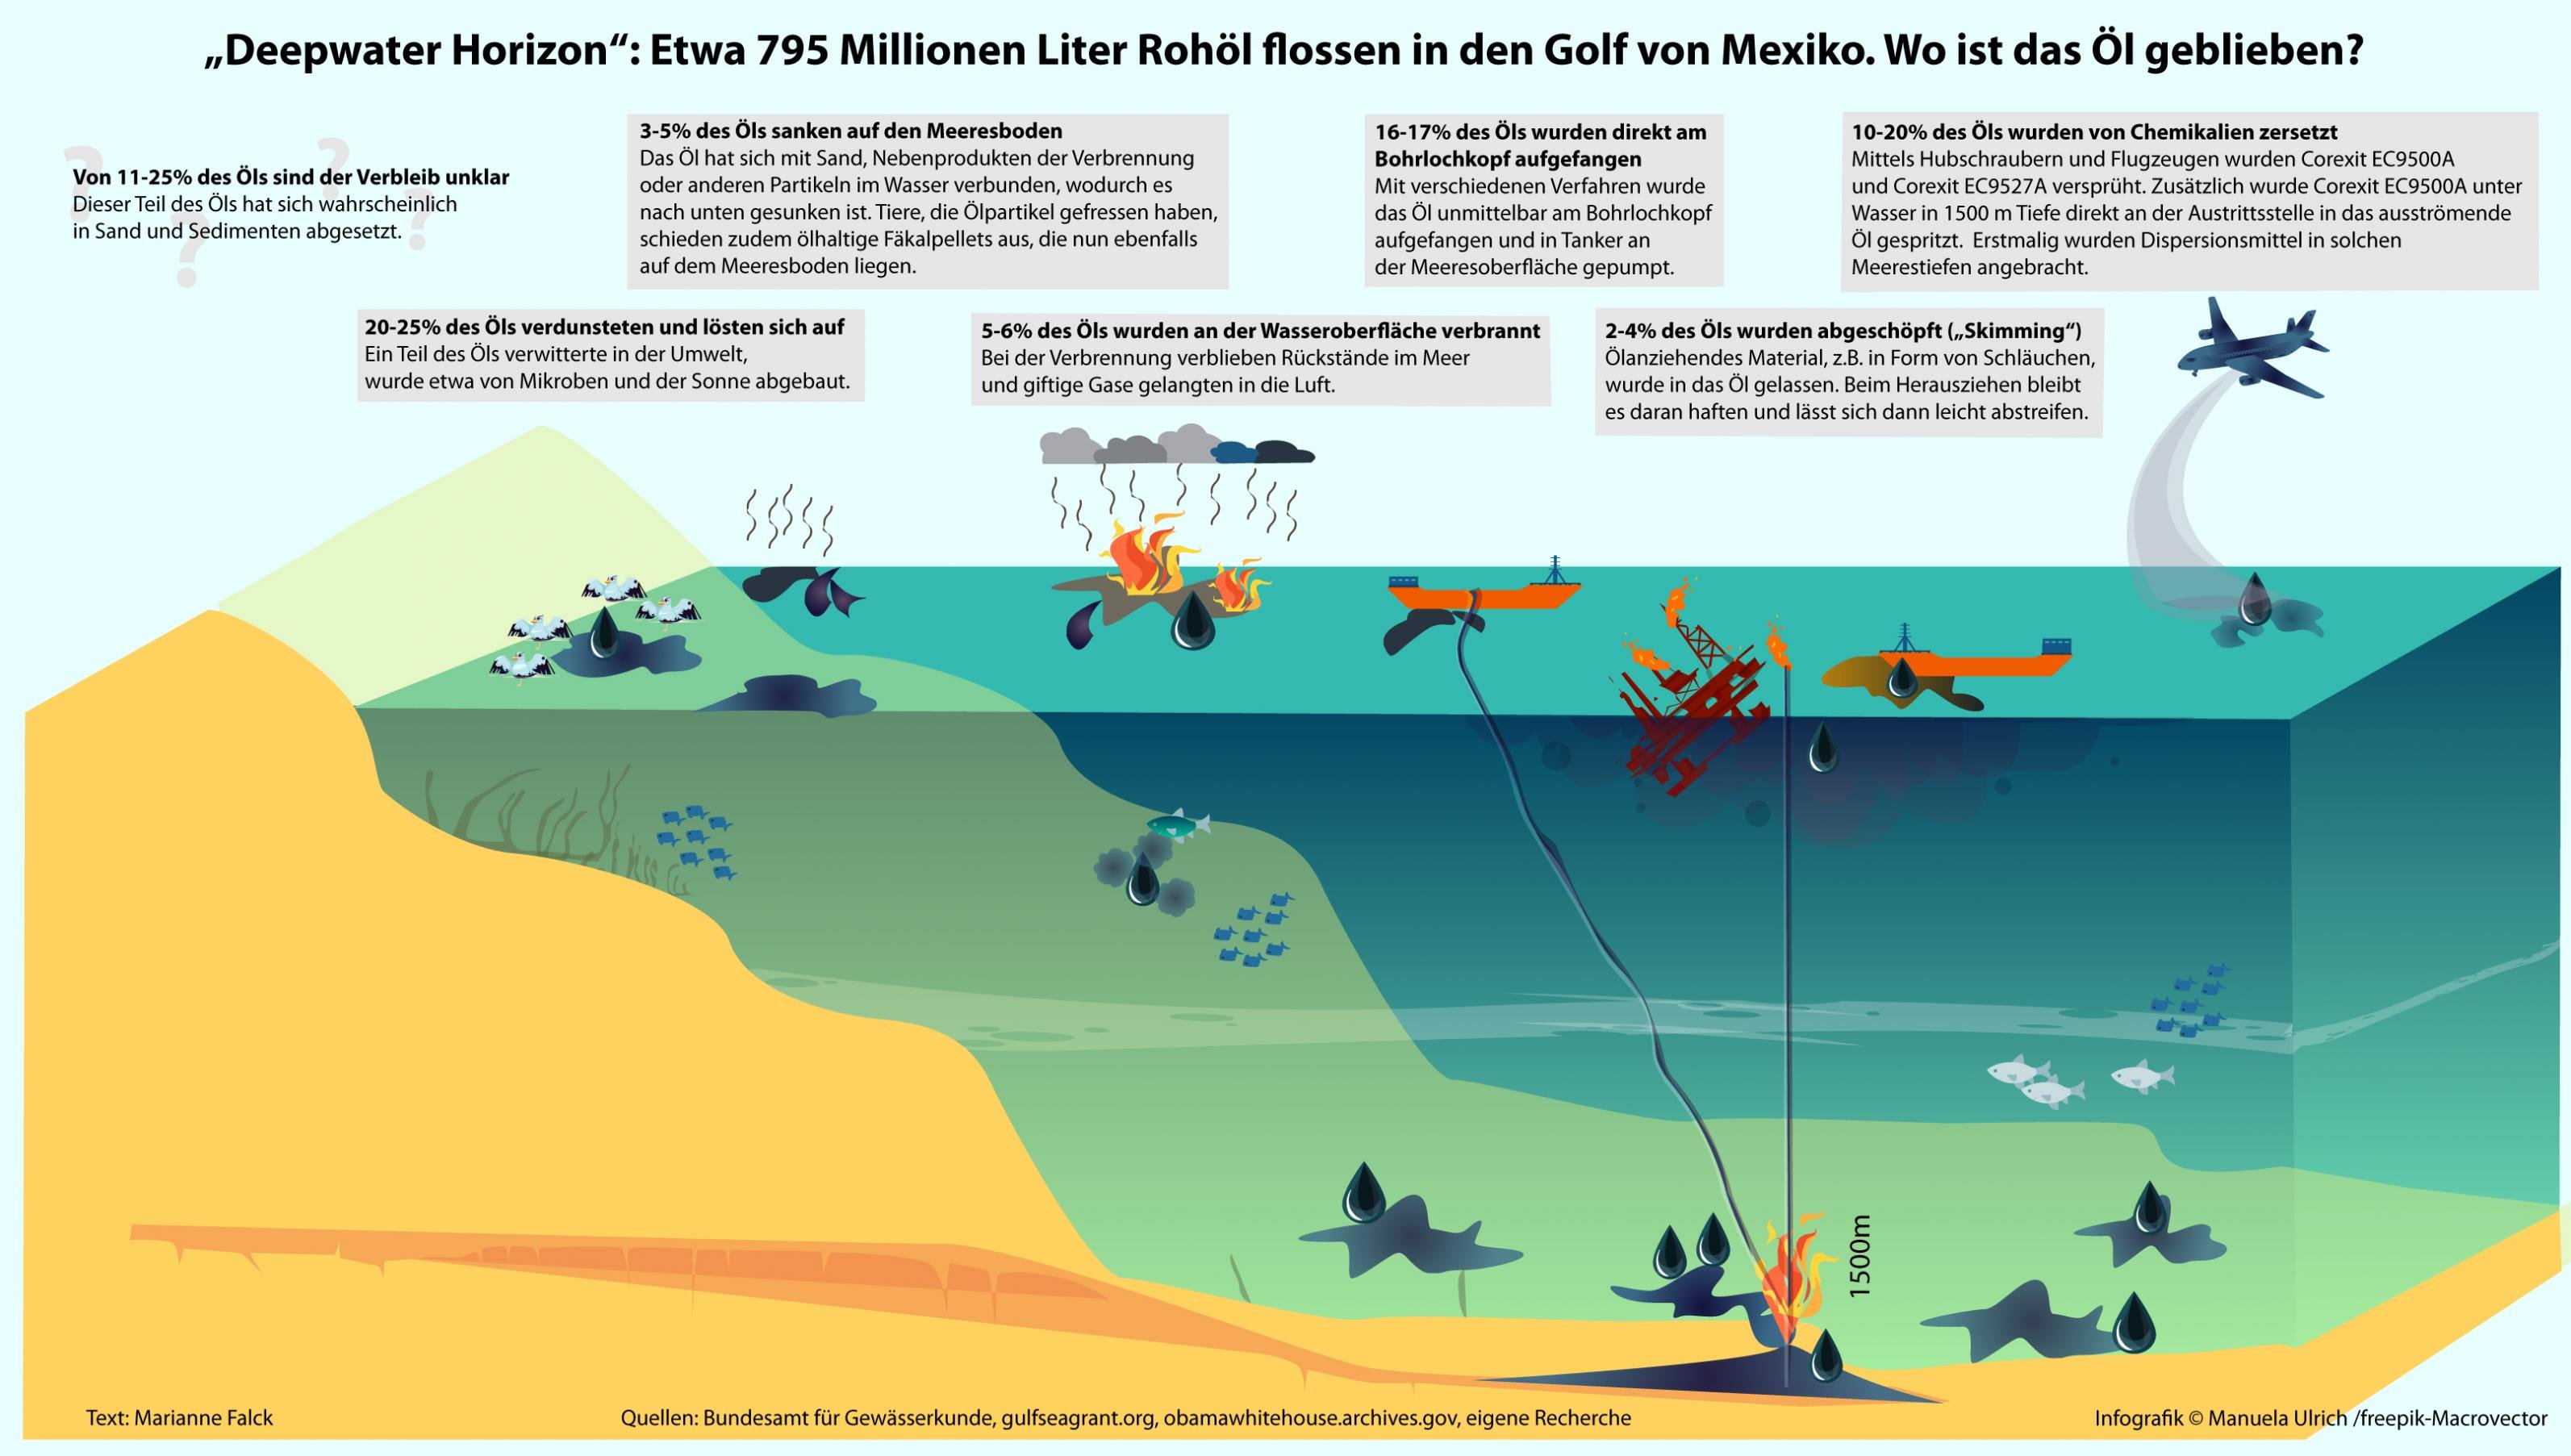 Das Bild ist eine Infografik, die beschreibt, wie das ausgelaufene Öl der Deepwater Horizon Katastrophe geblieben ist.